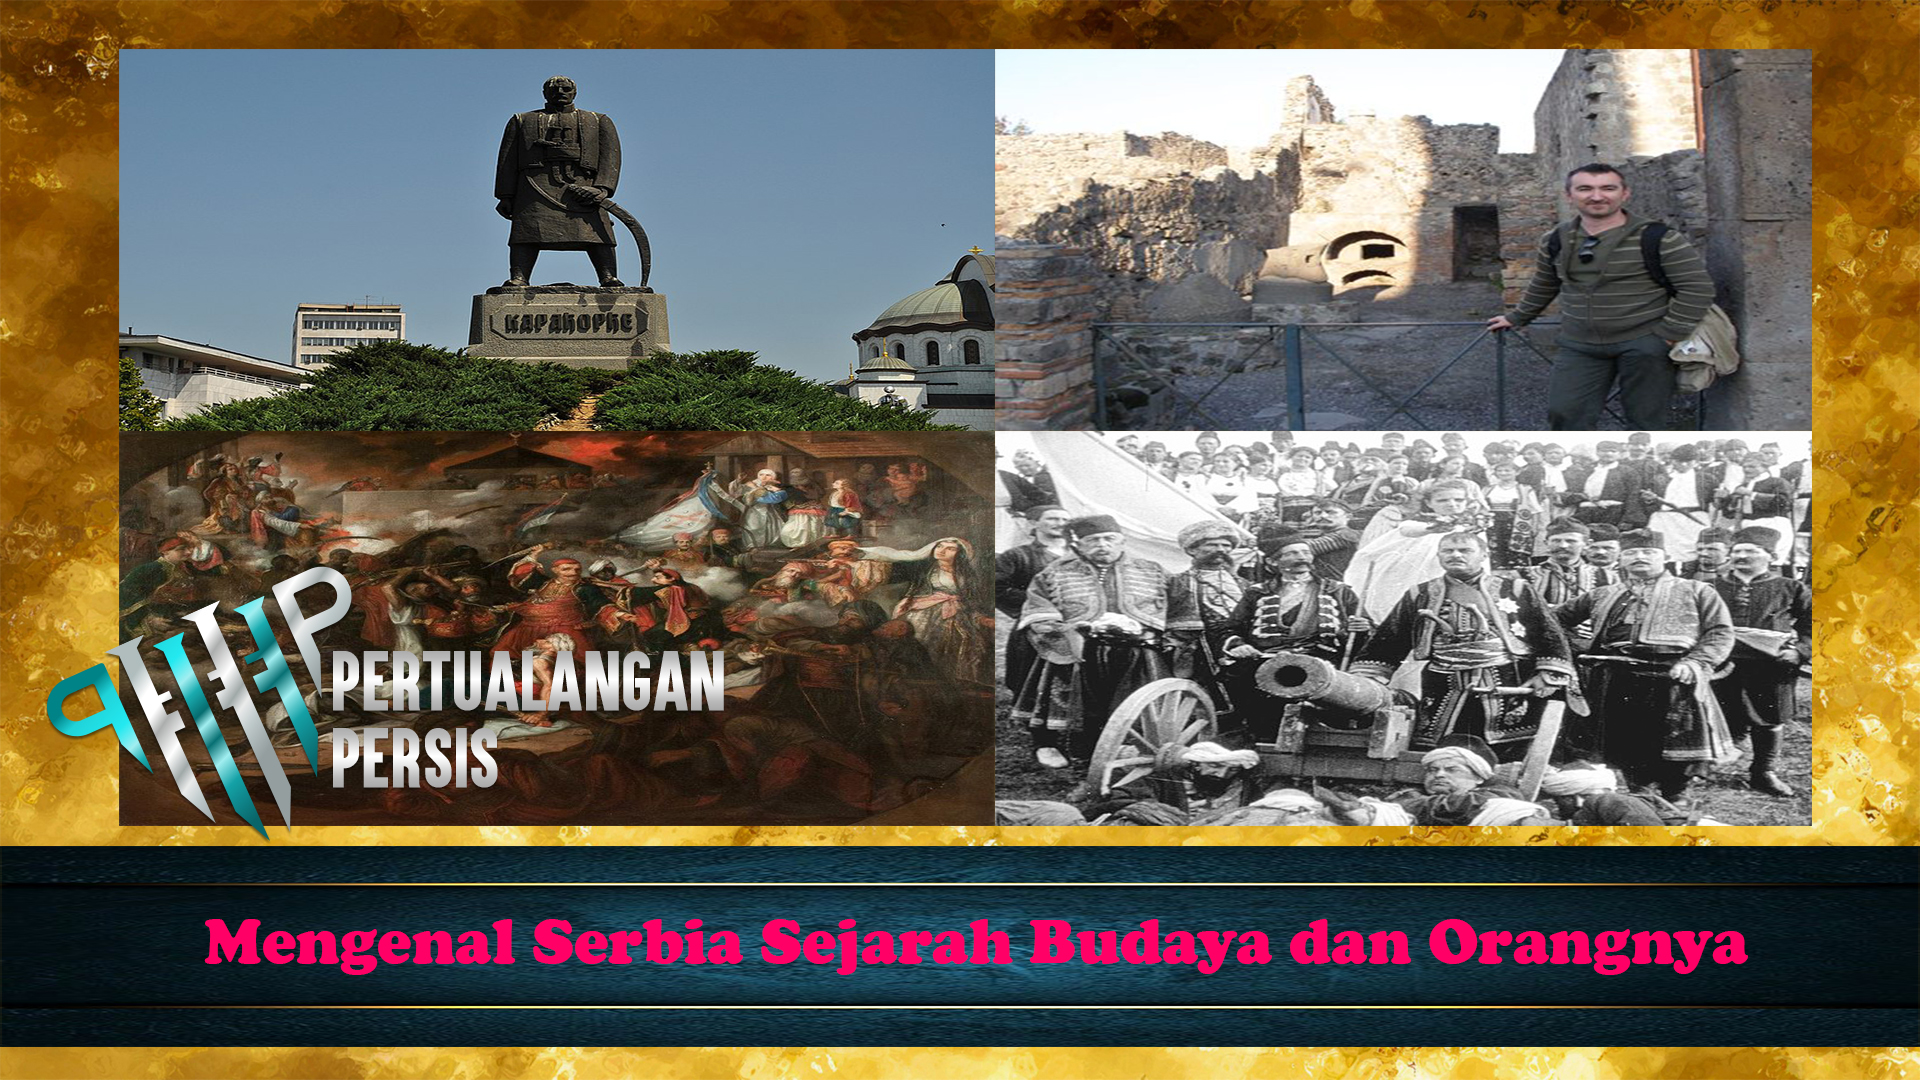 Mengenal Serbia Sejarah Budaya dan Orangnya